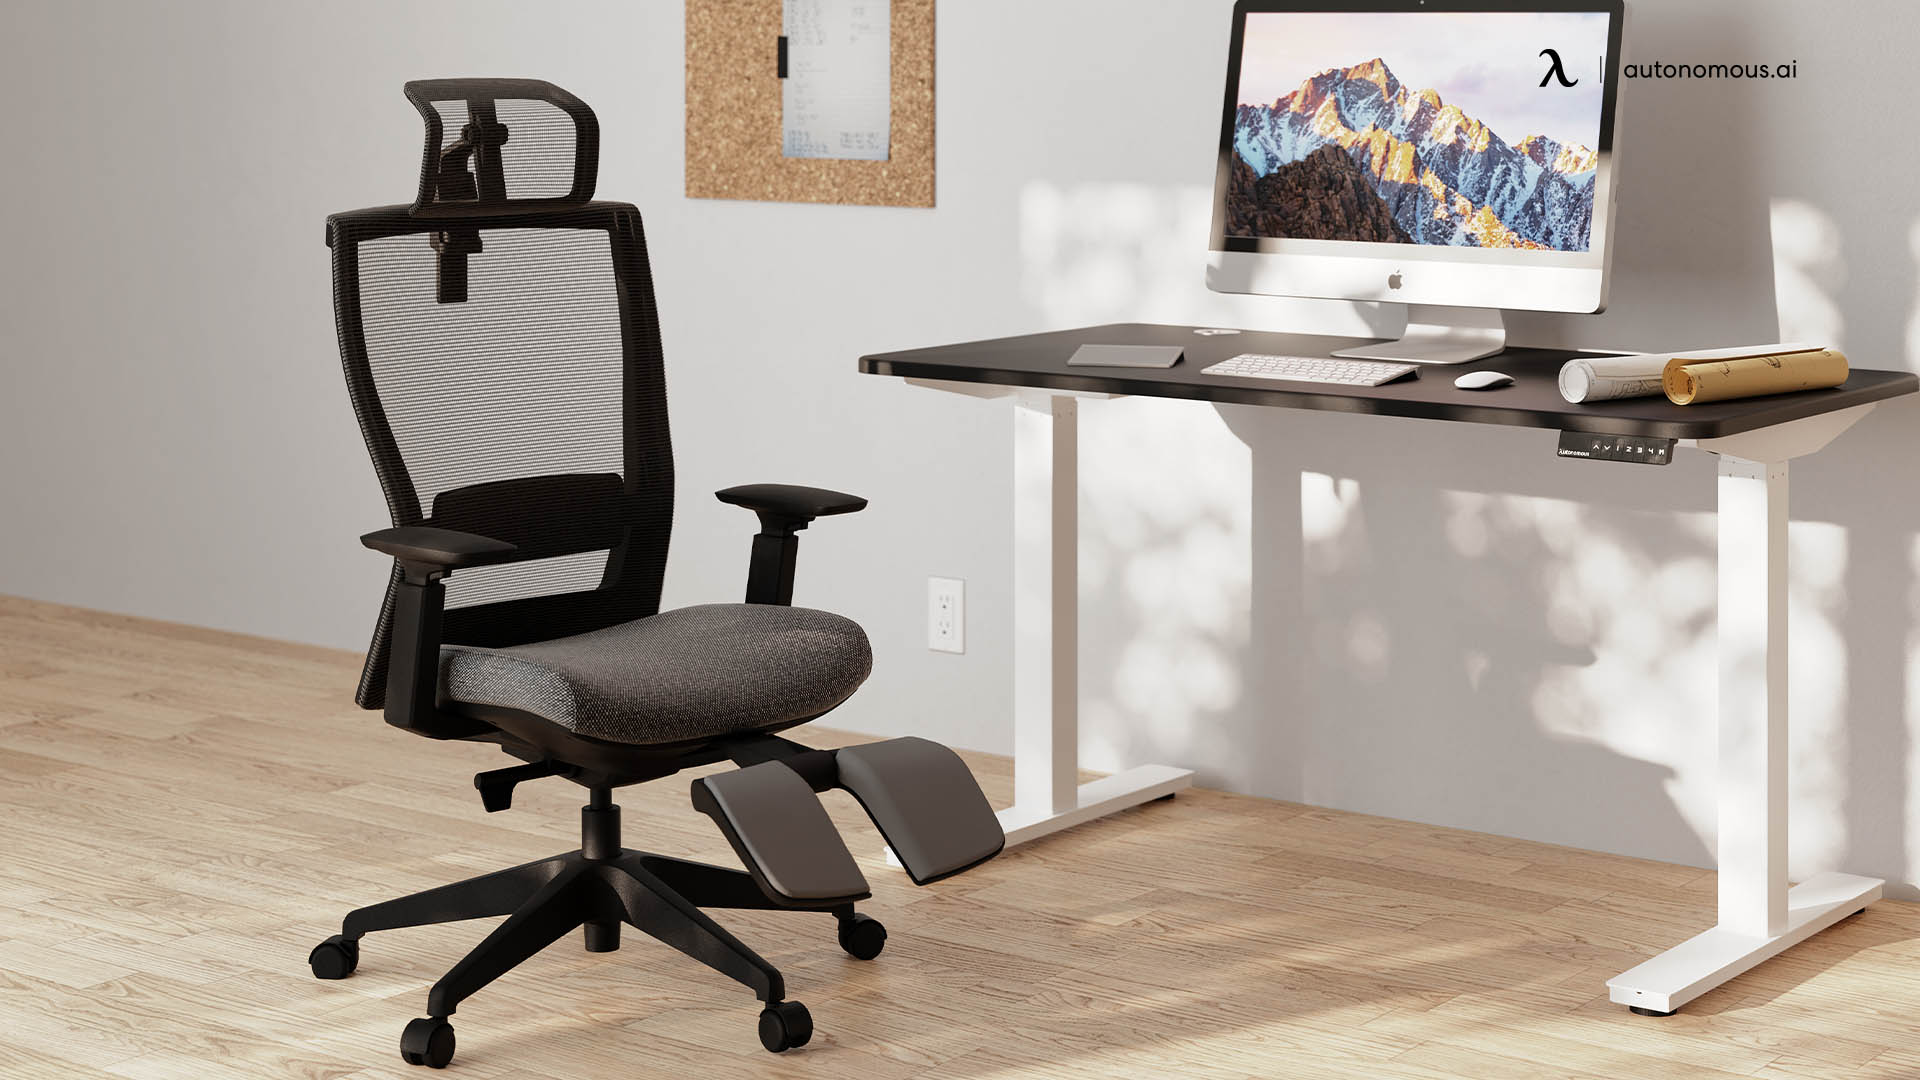 ErgoChair Recline desk chair arms